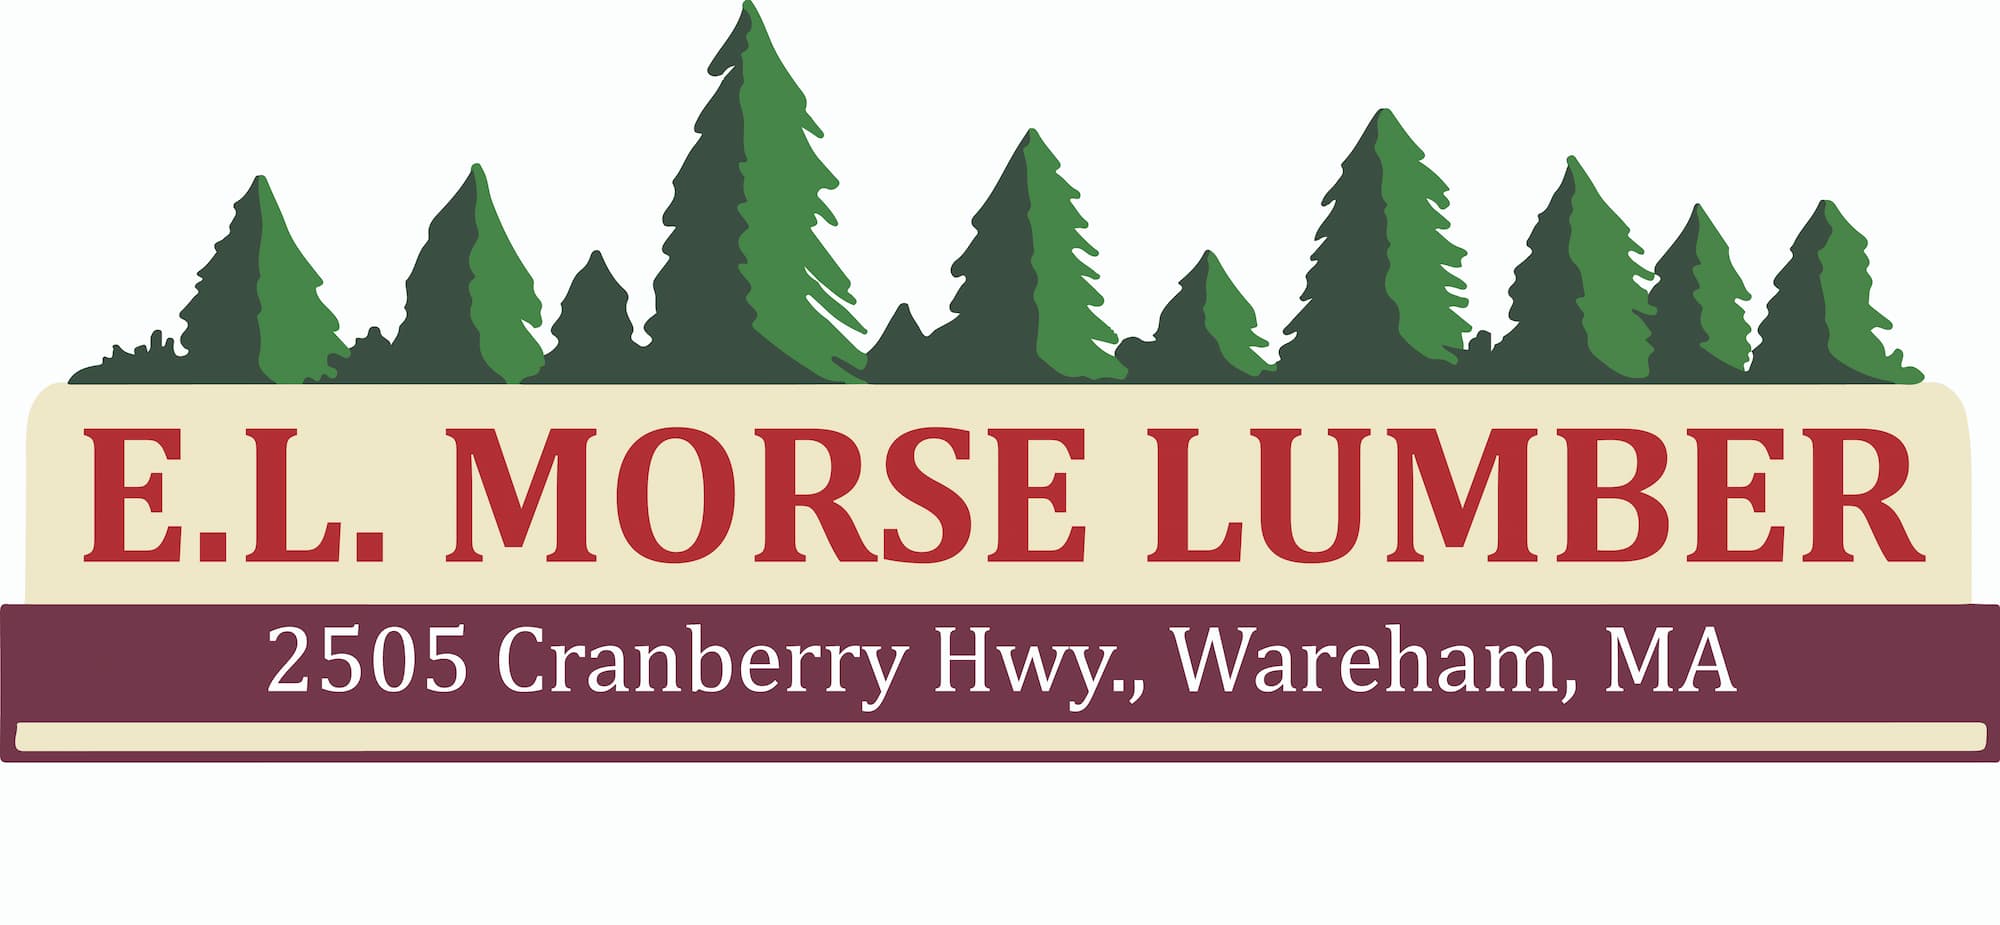 NEW logo for E.L. Morse Lumber